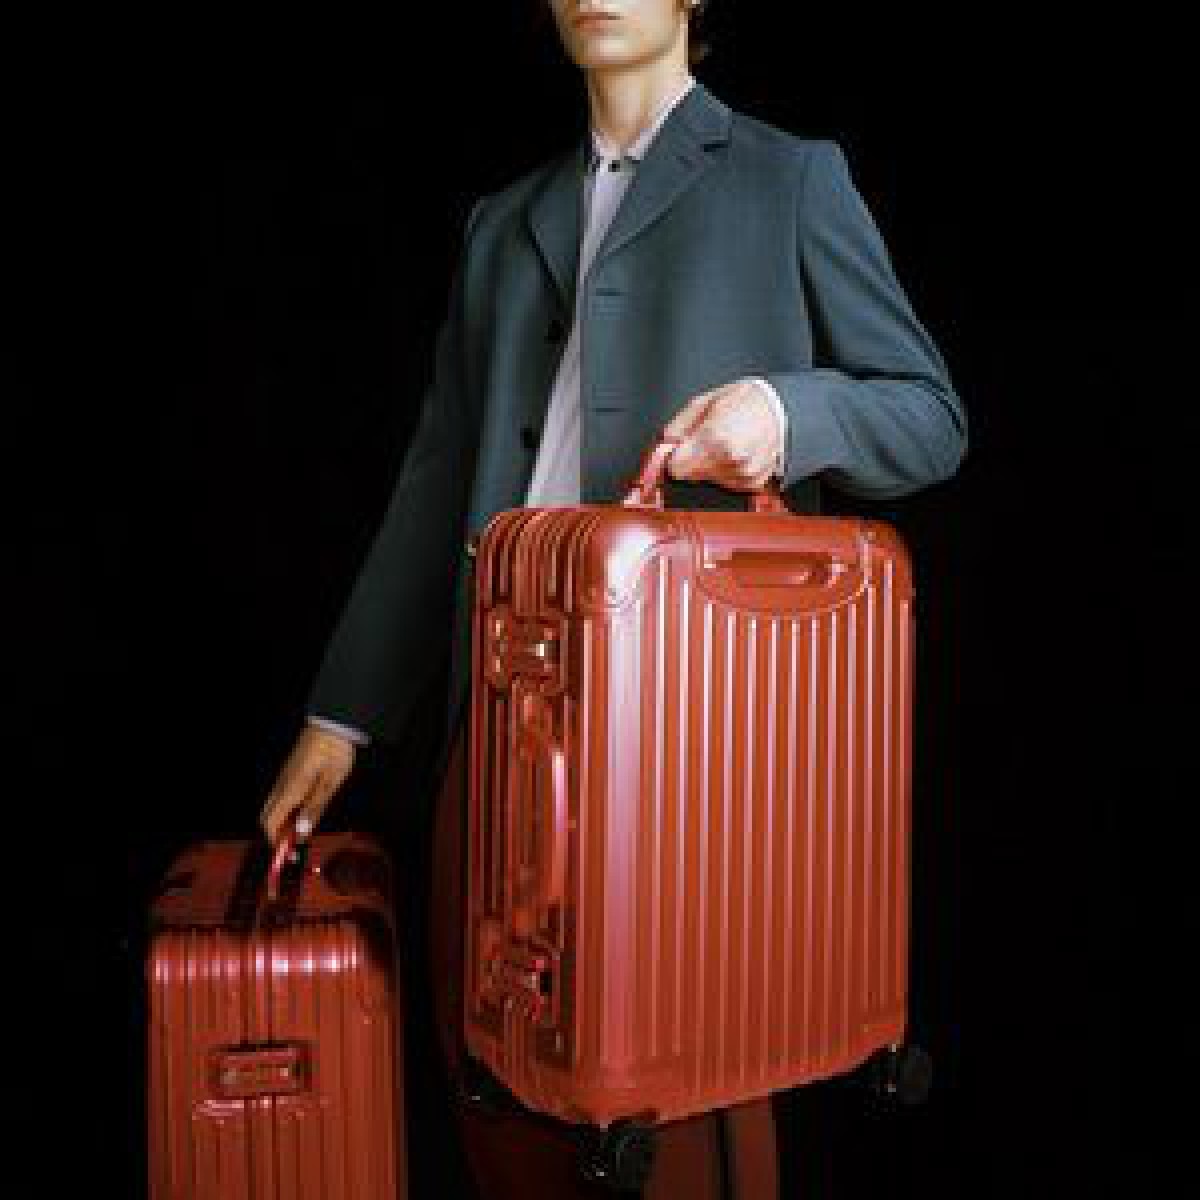 「リモワ」のアルミニウム合金製スーツケースに地中海やトキに着想した新色が登場